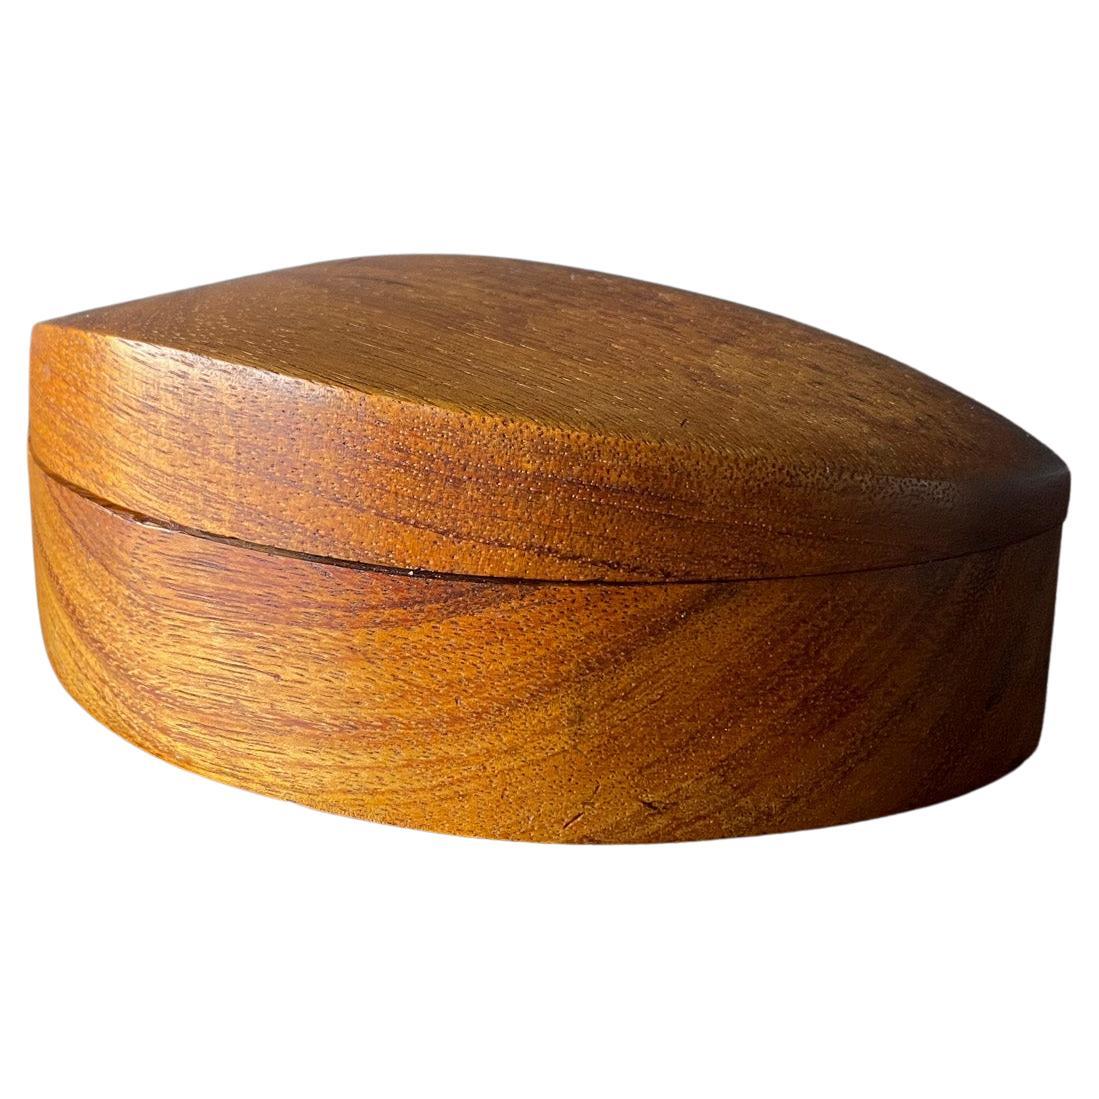 Is Koa wood water-resistant?